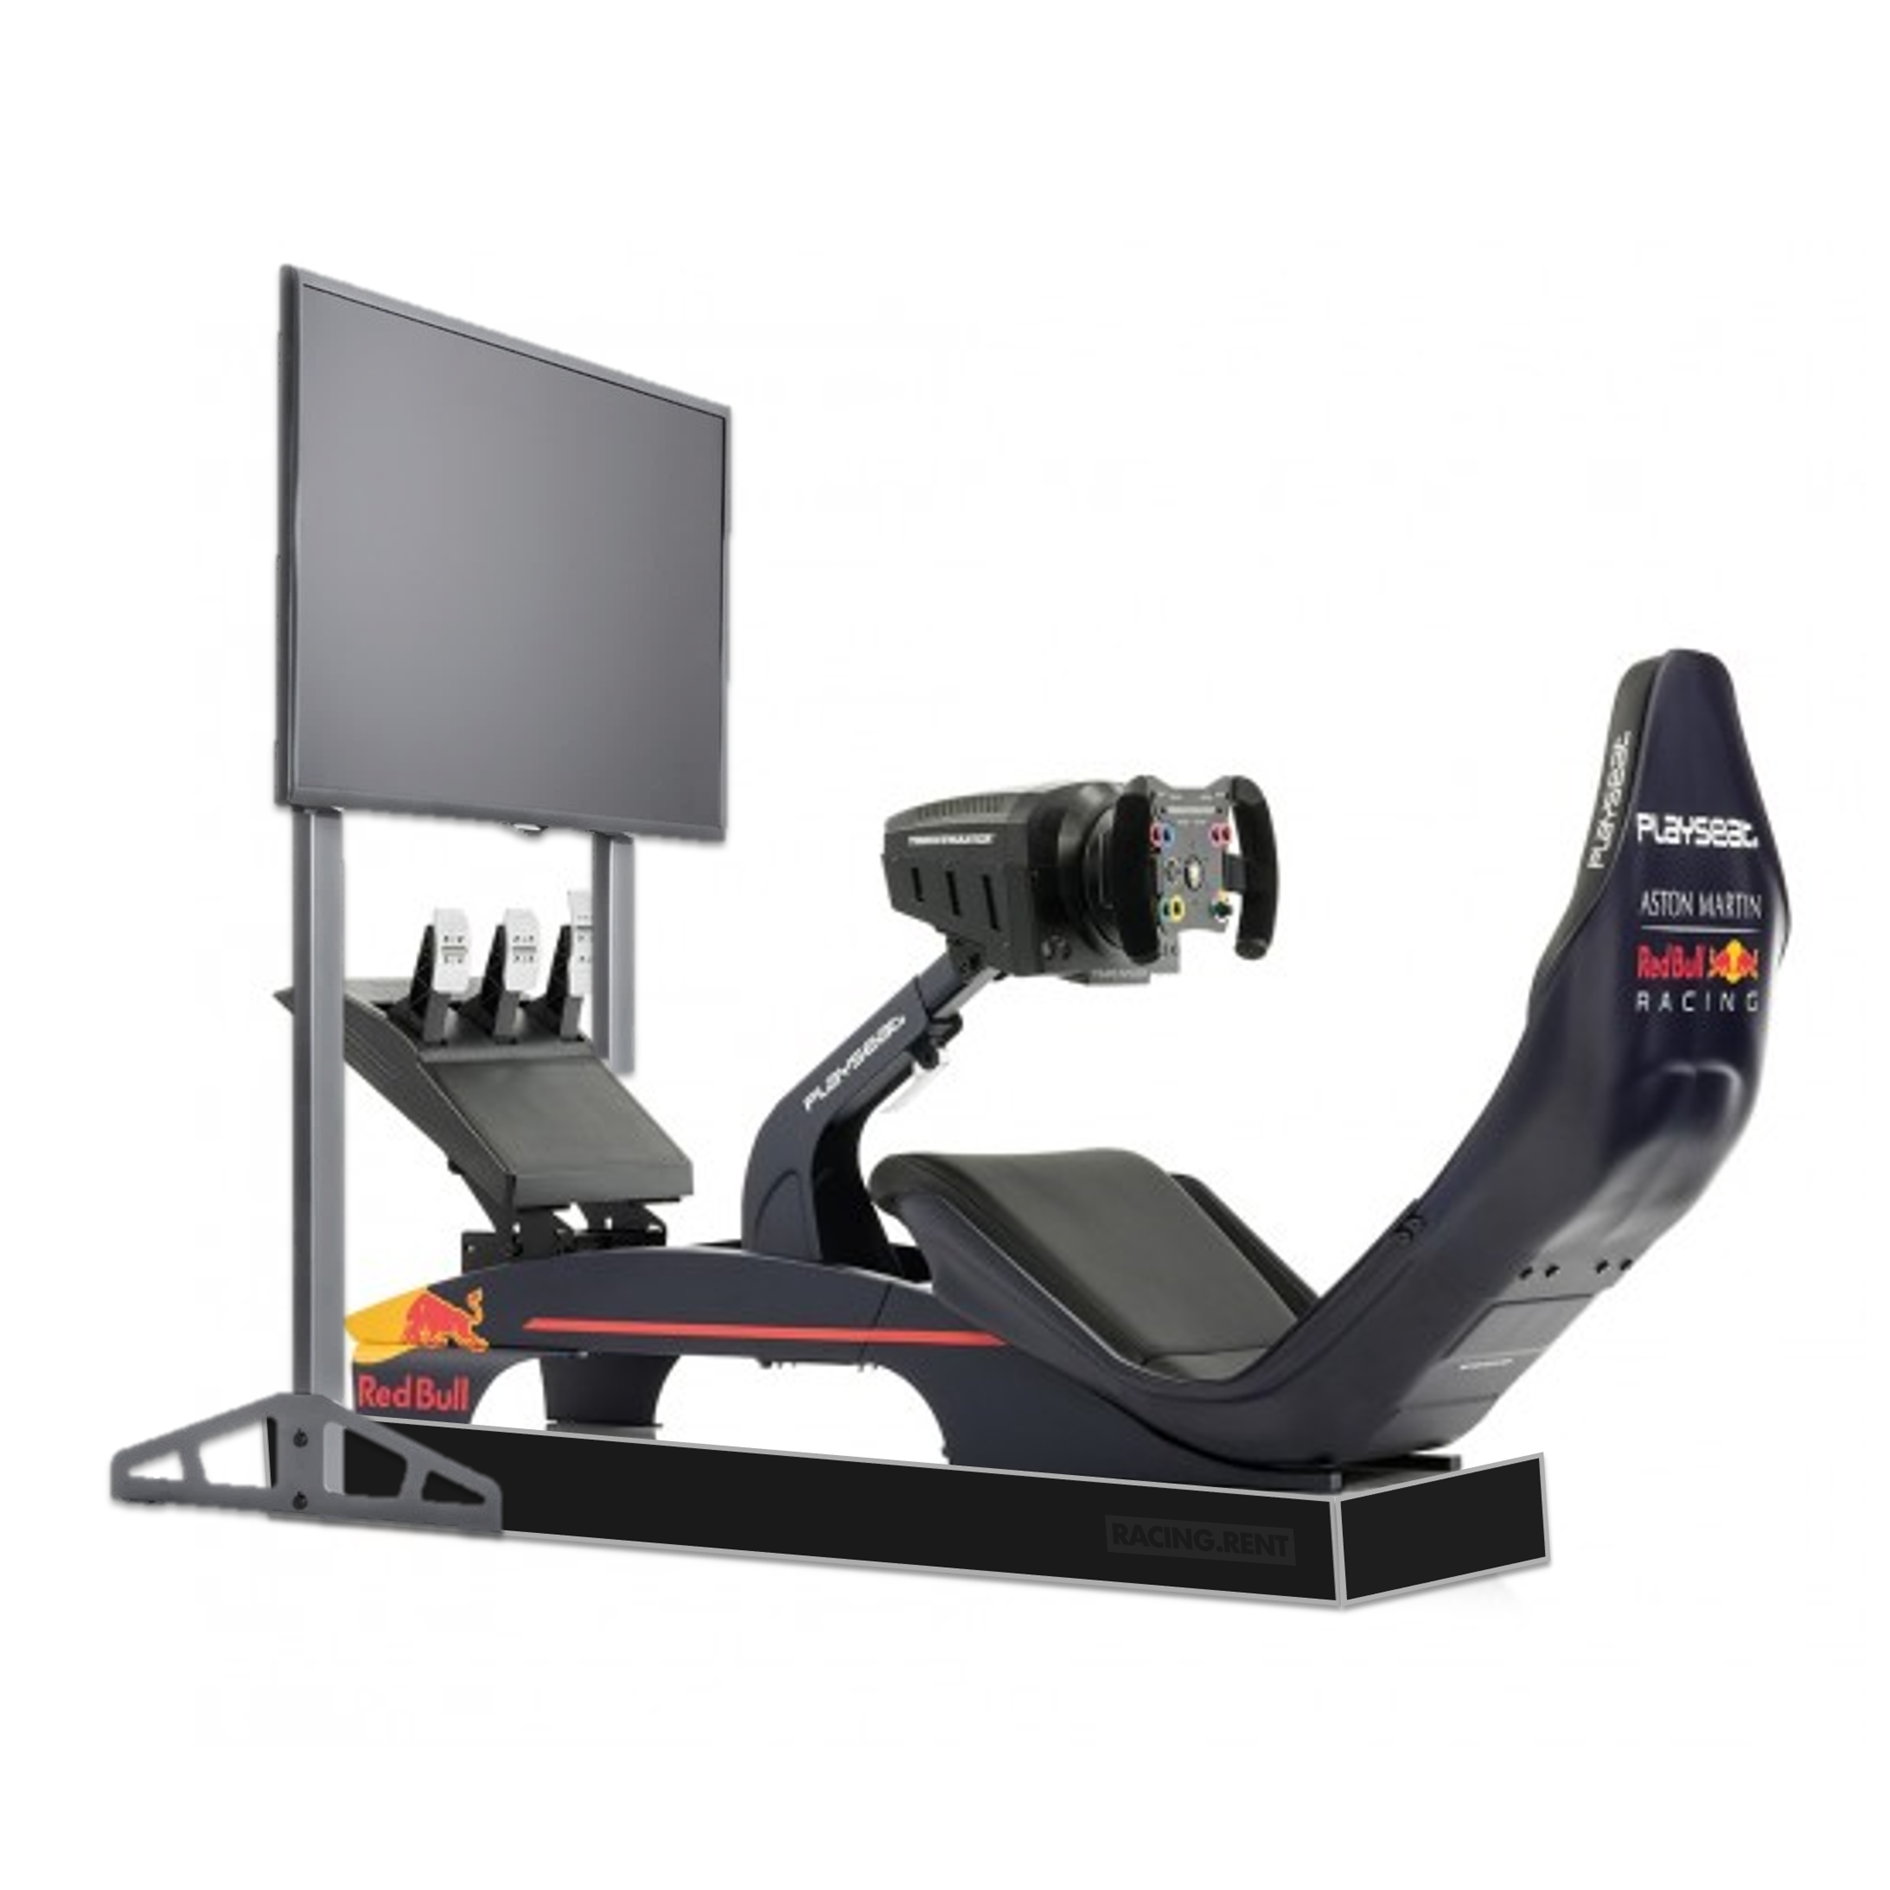 Red Bull Racing F1™ simulator